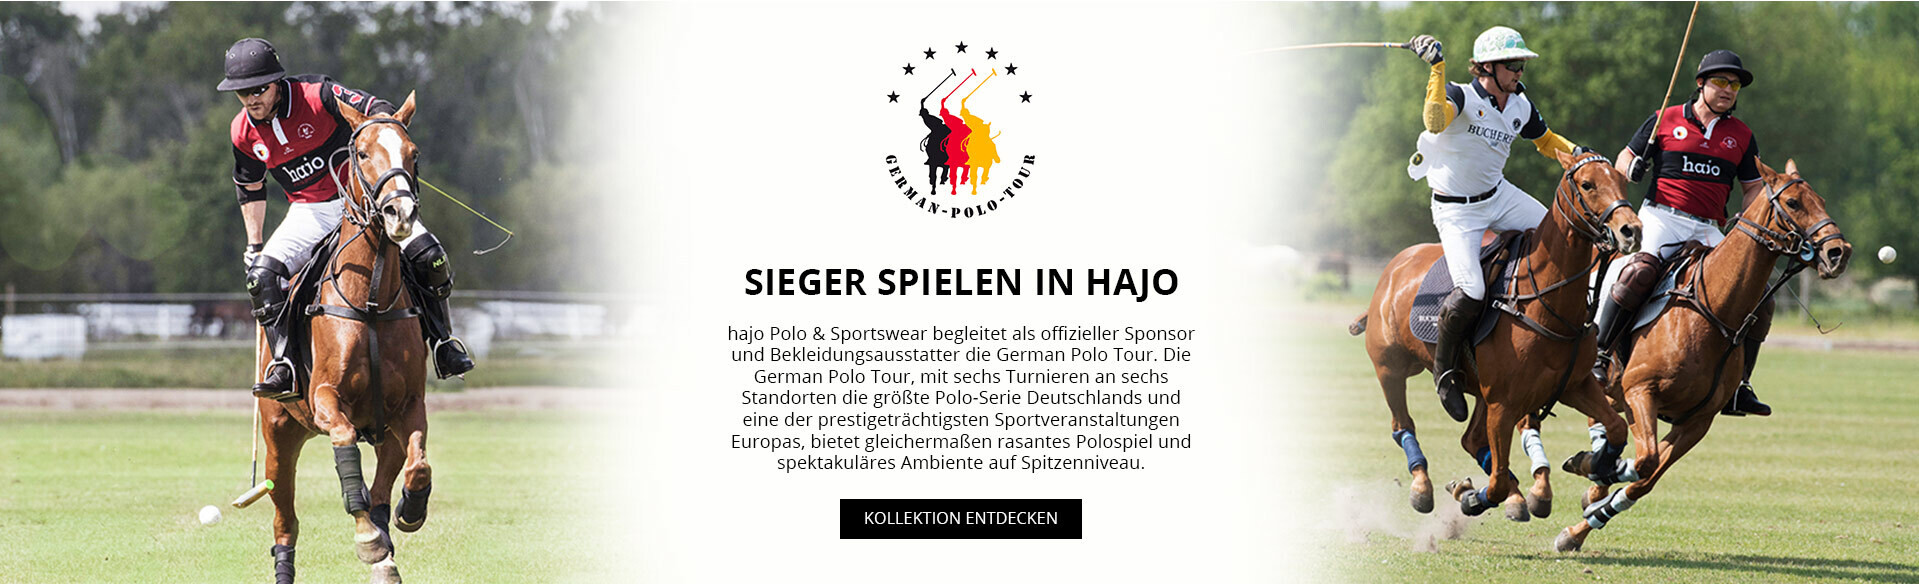 Sieger spielen in hajo. hajo Polo & Sportswear begleitet als Offizieller Sponsor und Bekleidungsausstatter die German Polo Tour.